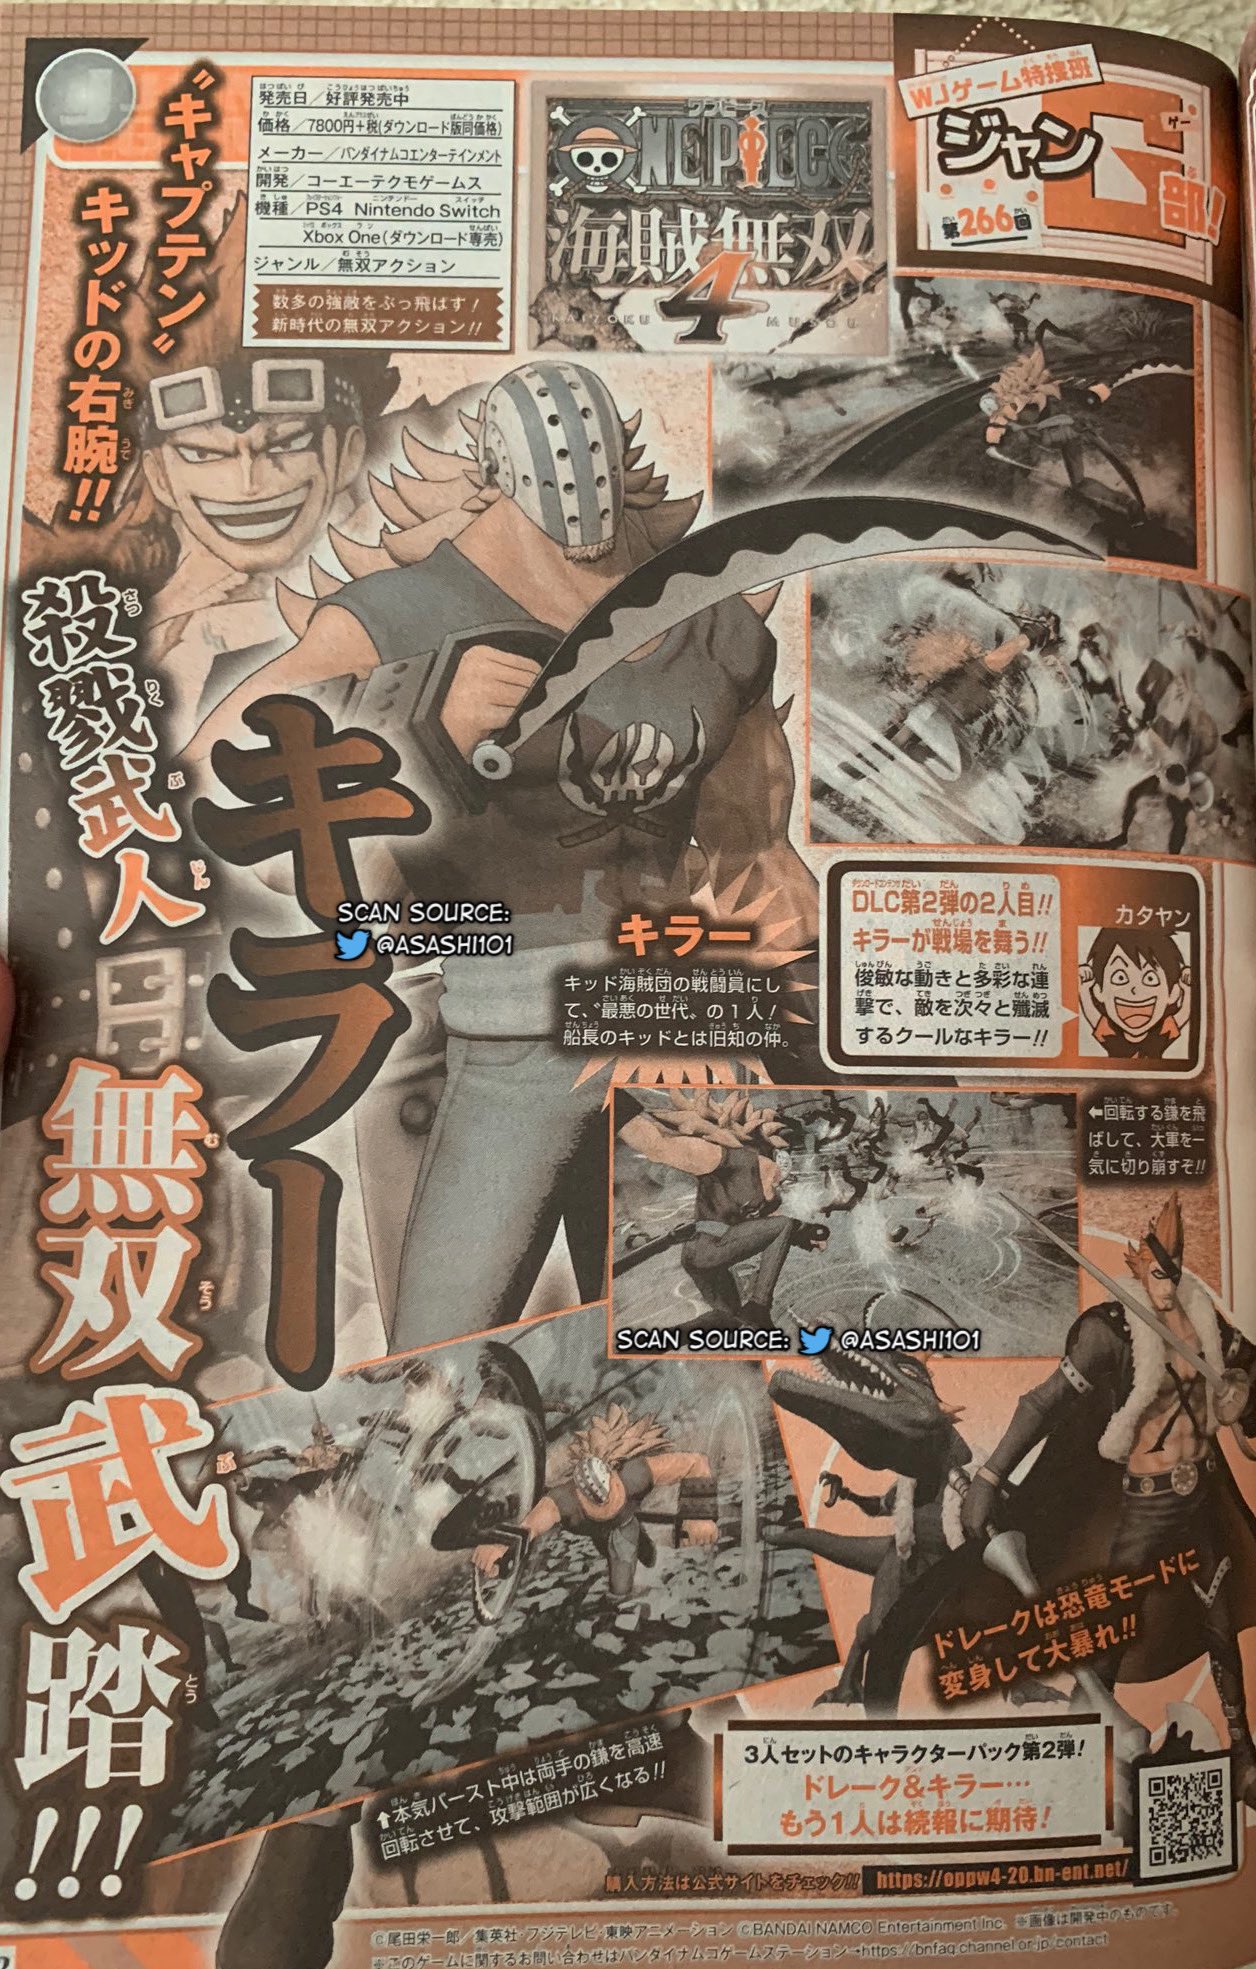 One Piece Pirate Warriors 4 Dlc Character Killer Announced Gematsu